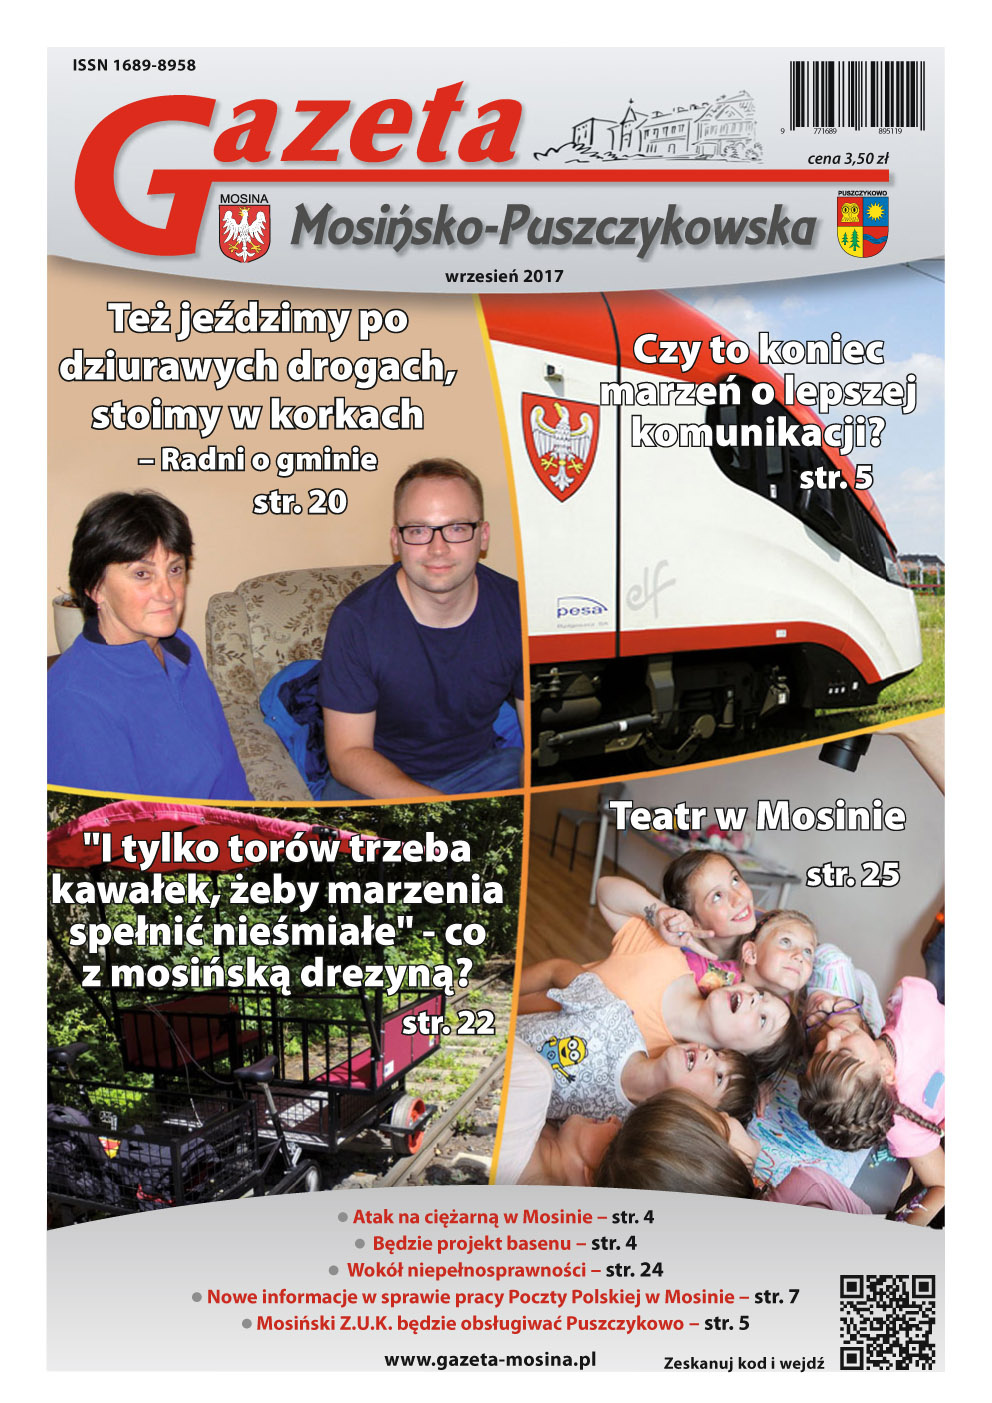 Wrzesień 2017 -  wydanie Gazety Mosińsko-Puszczykowskiej